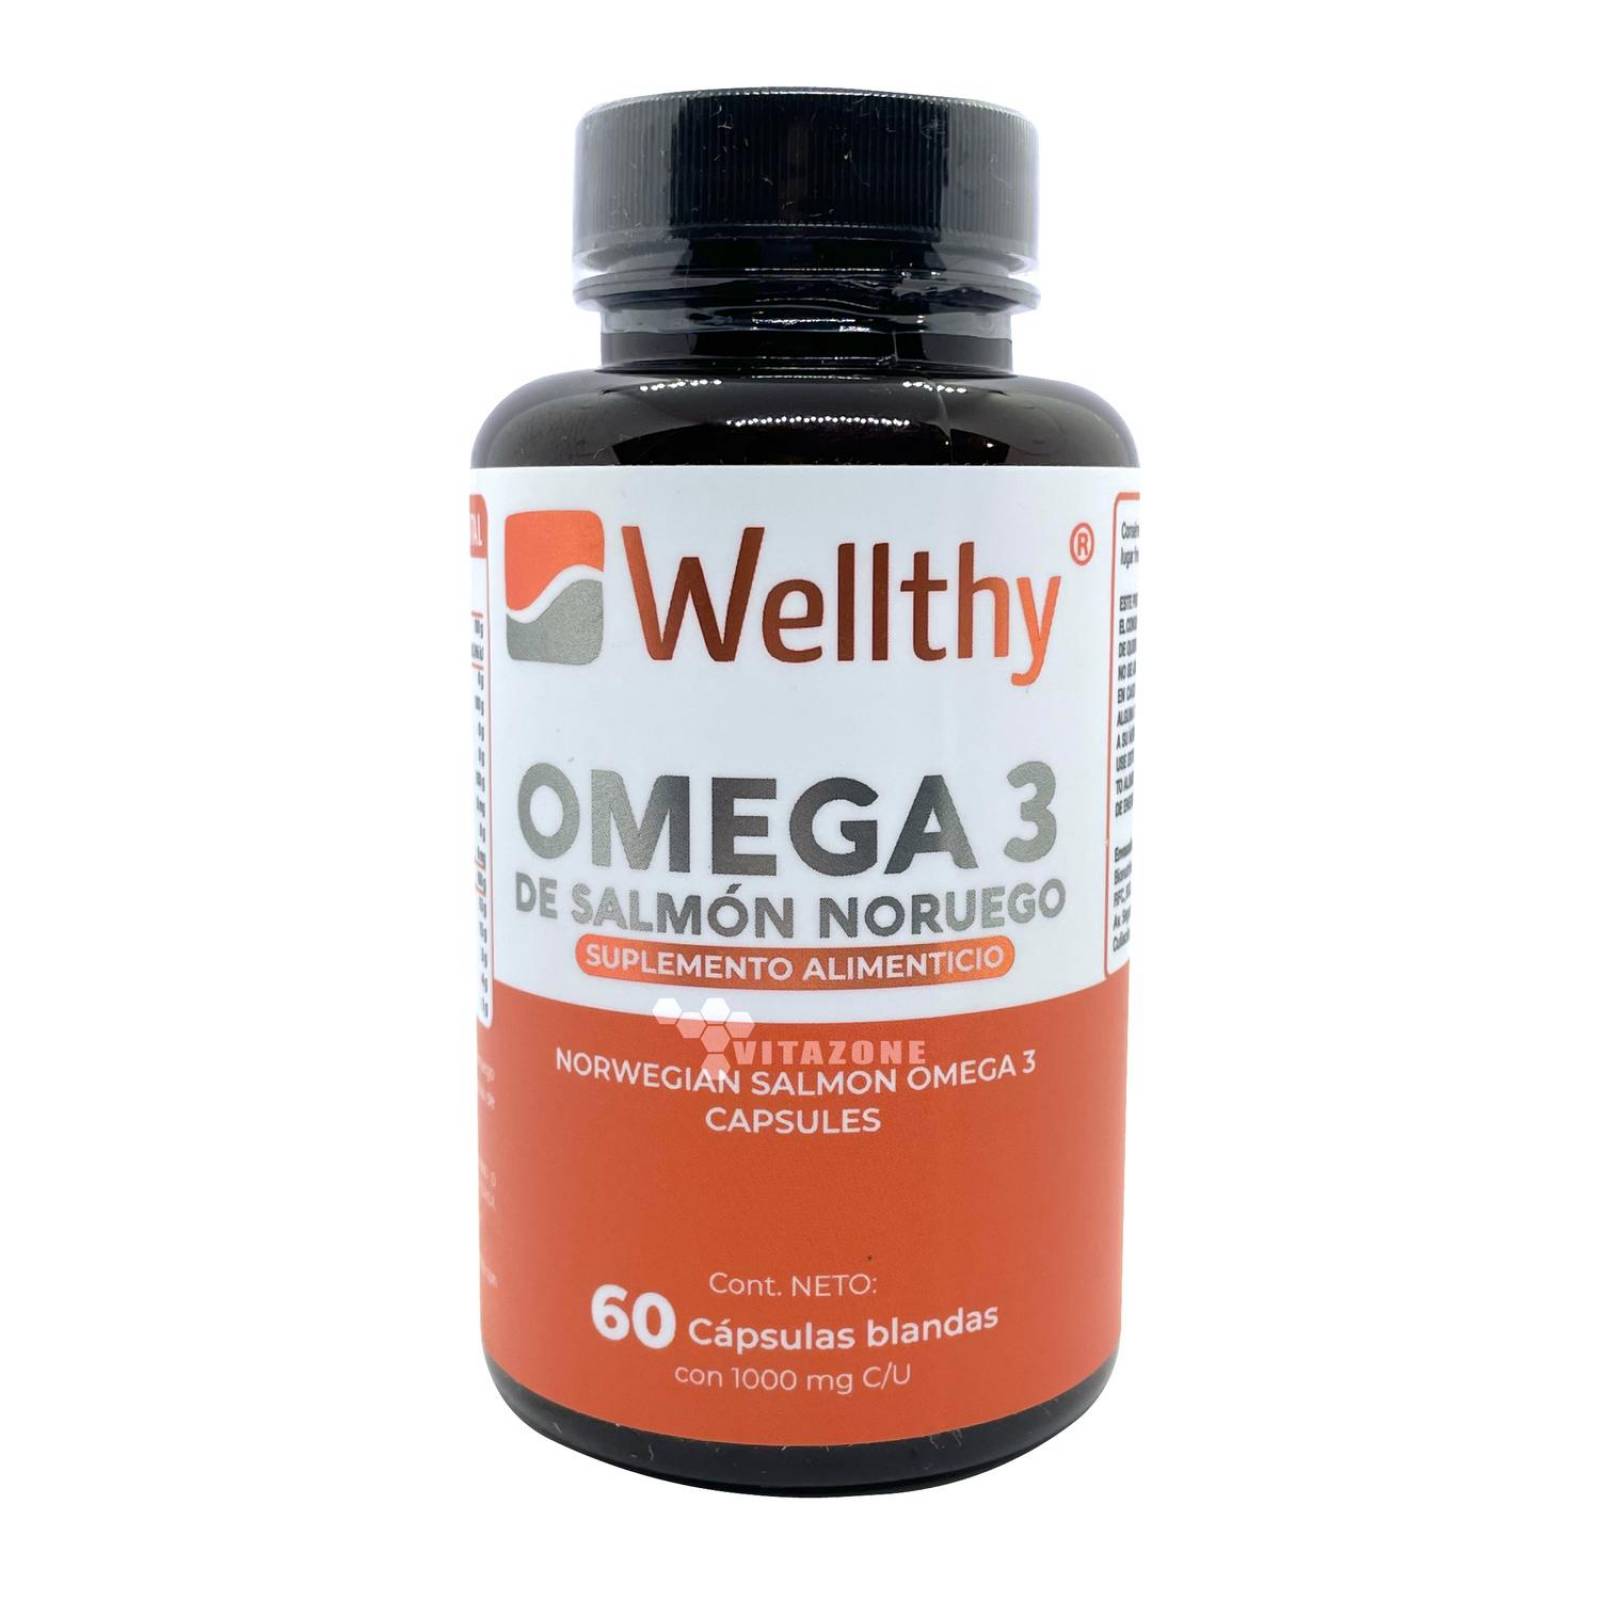 Omega 3 de Salmon Noruego 60 cáps blandas Wellthy 